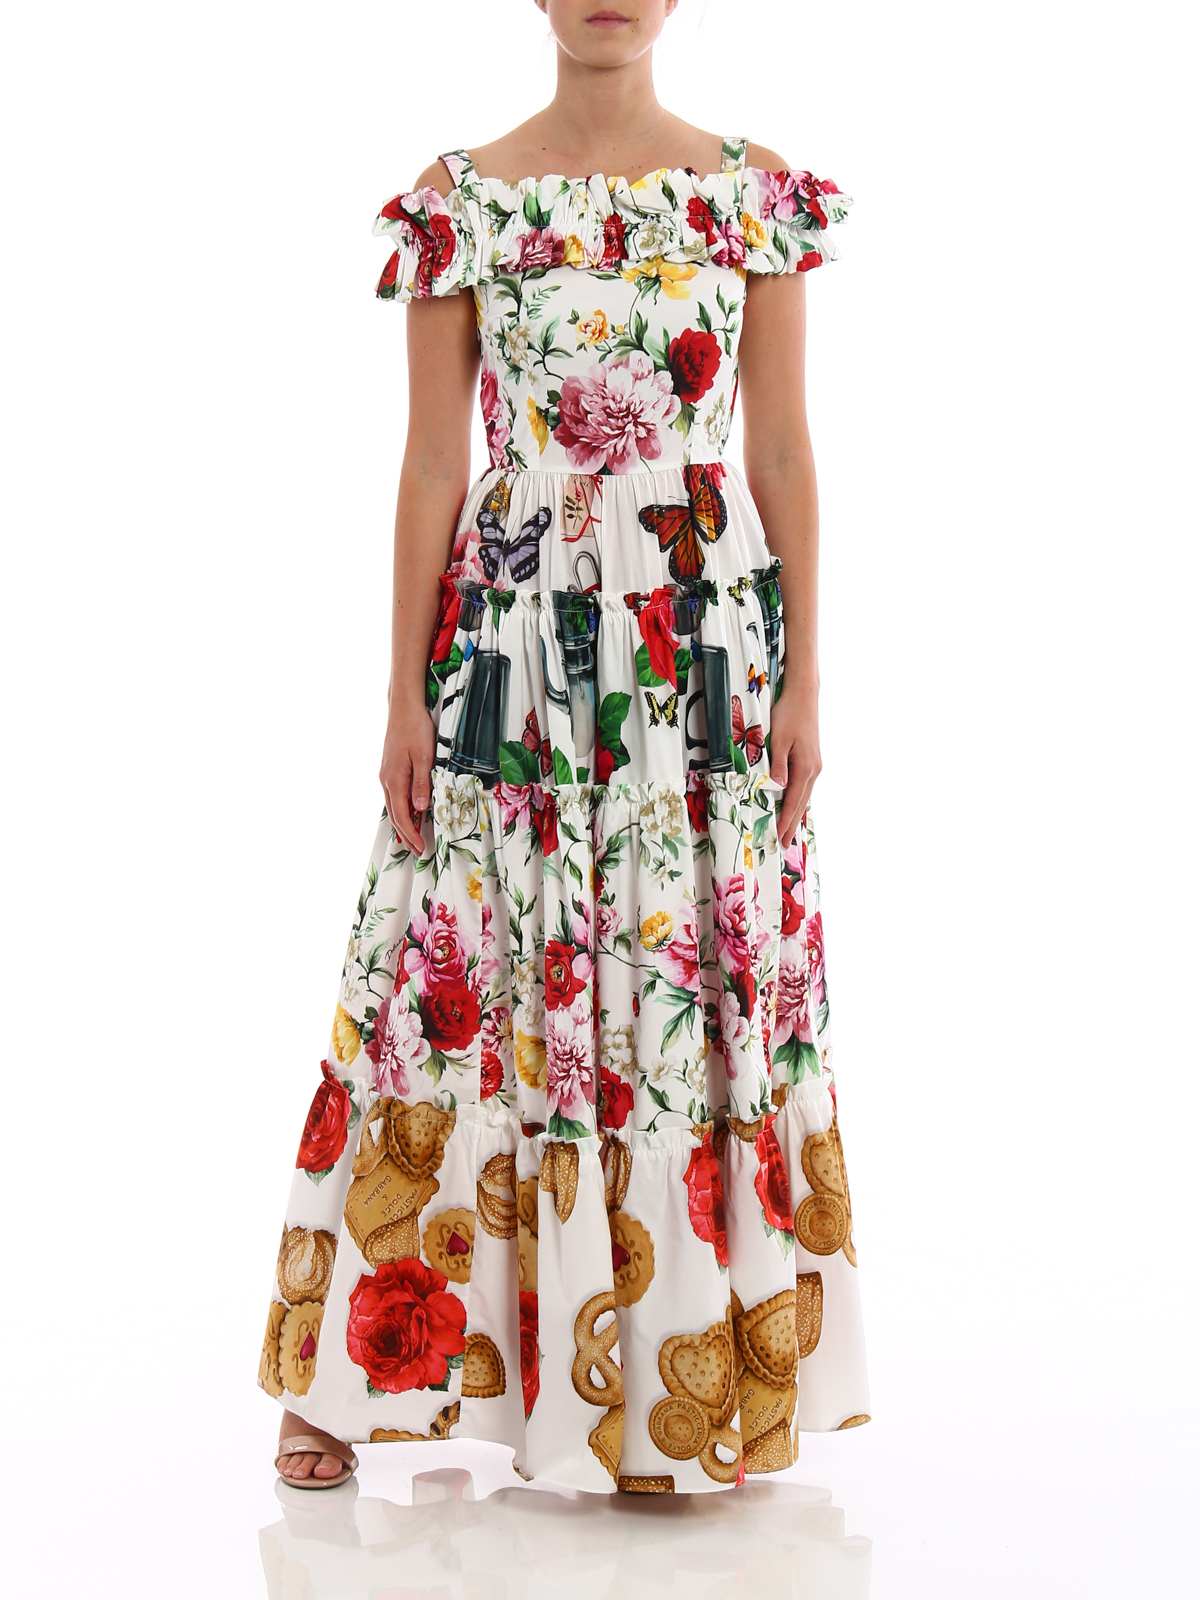 Gabbana - Floral cotton flounced dress 